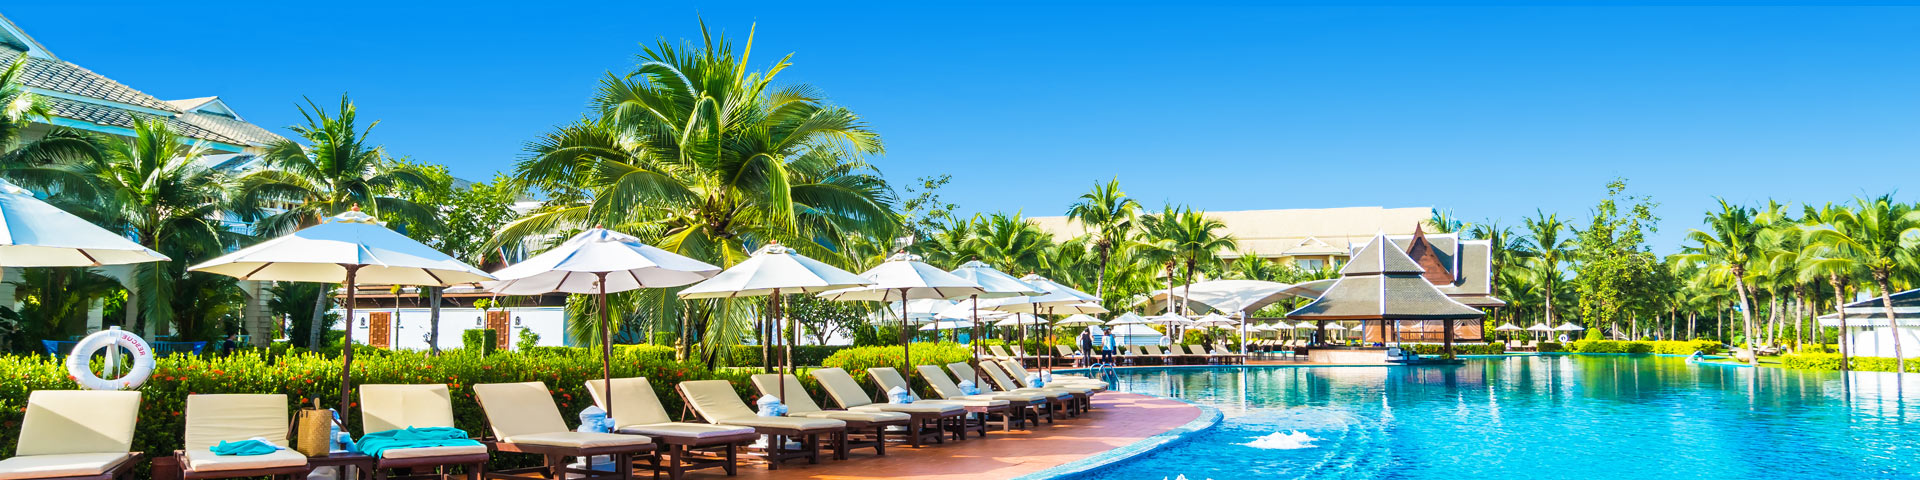 Luxe zwembad met ligbedjes en parasols op een all inclusive vakantie